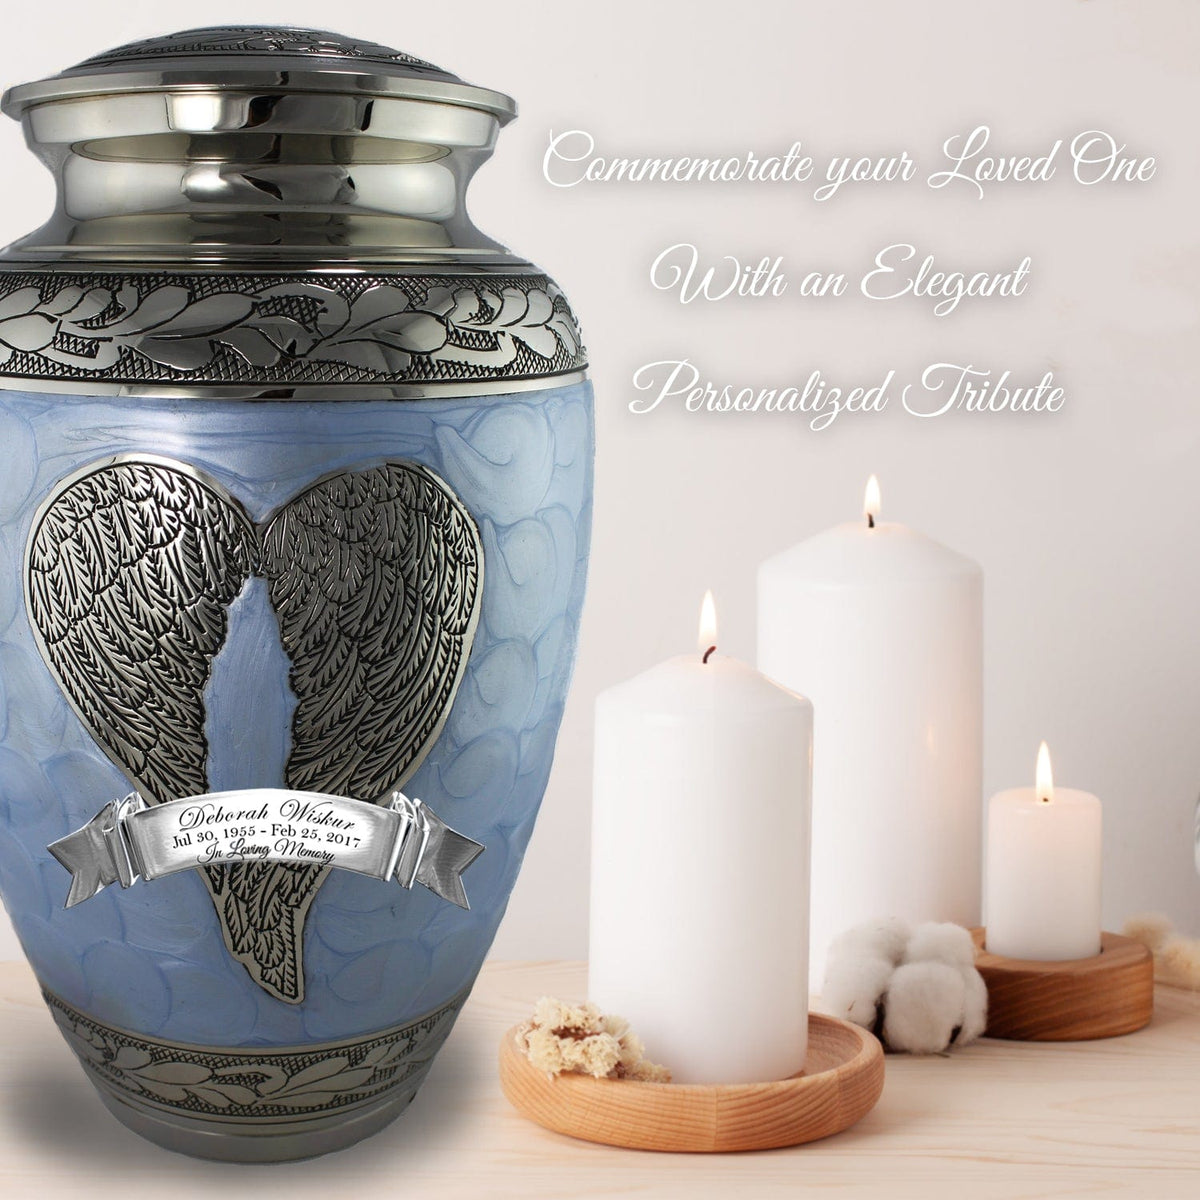 Commemorative Cremation Urns Home &amp; Garden Blue Loving Angel Cremation Urns